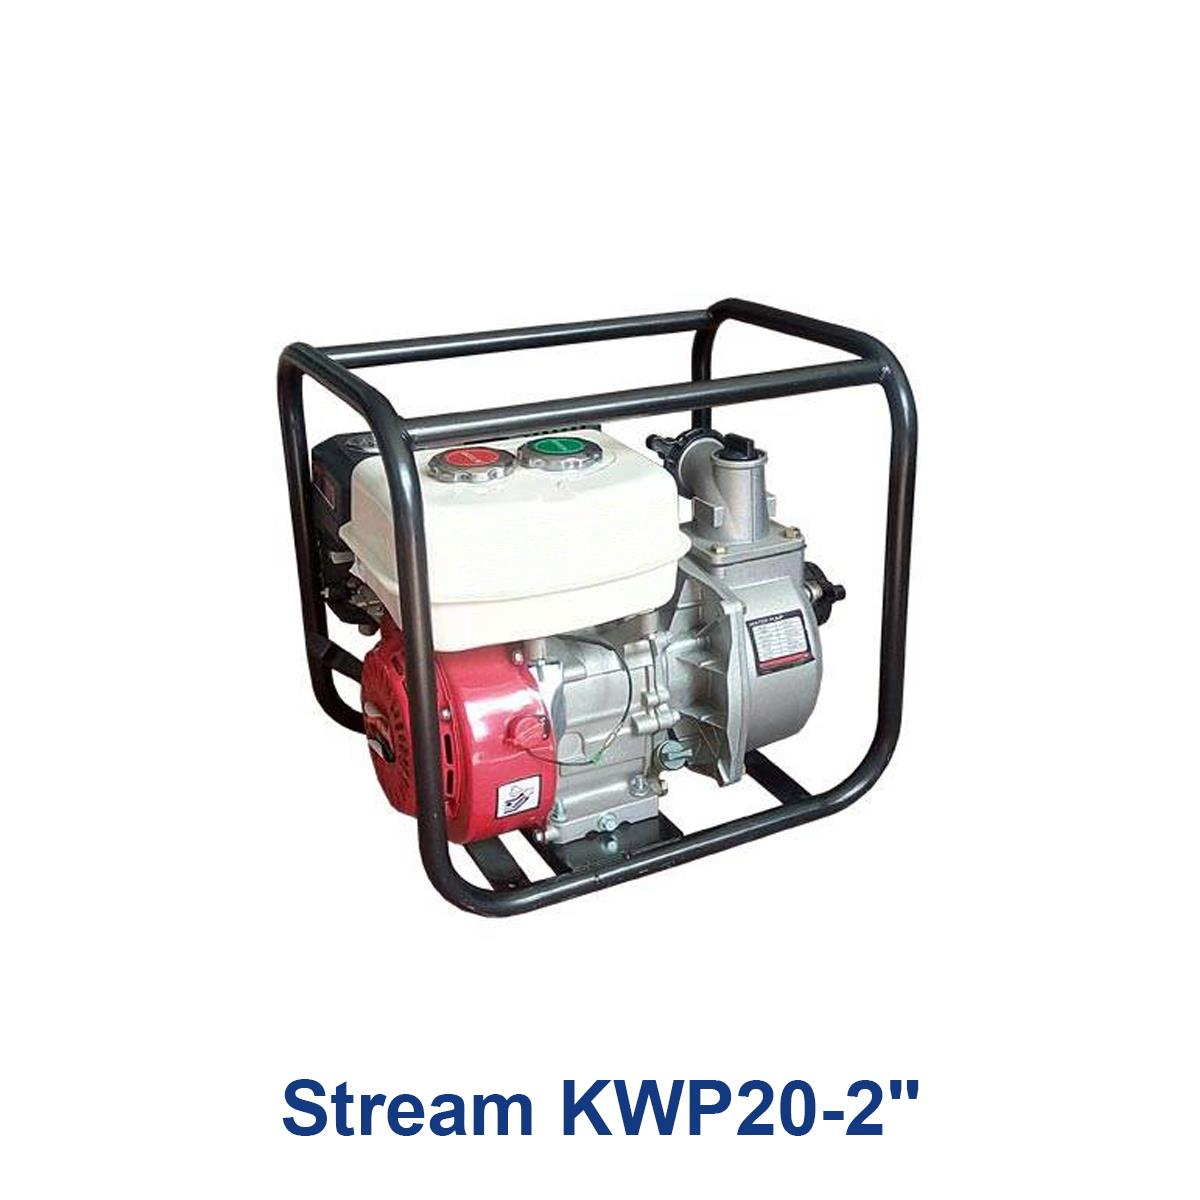 Stream-KWP20-2